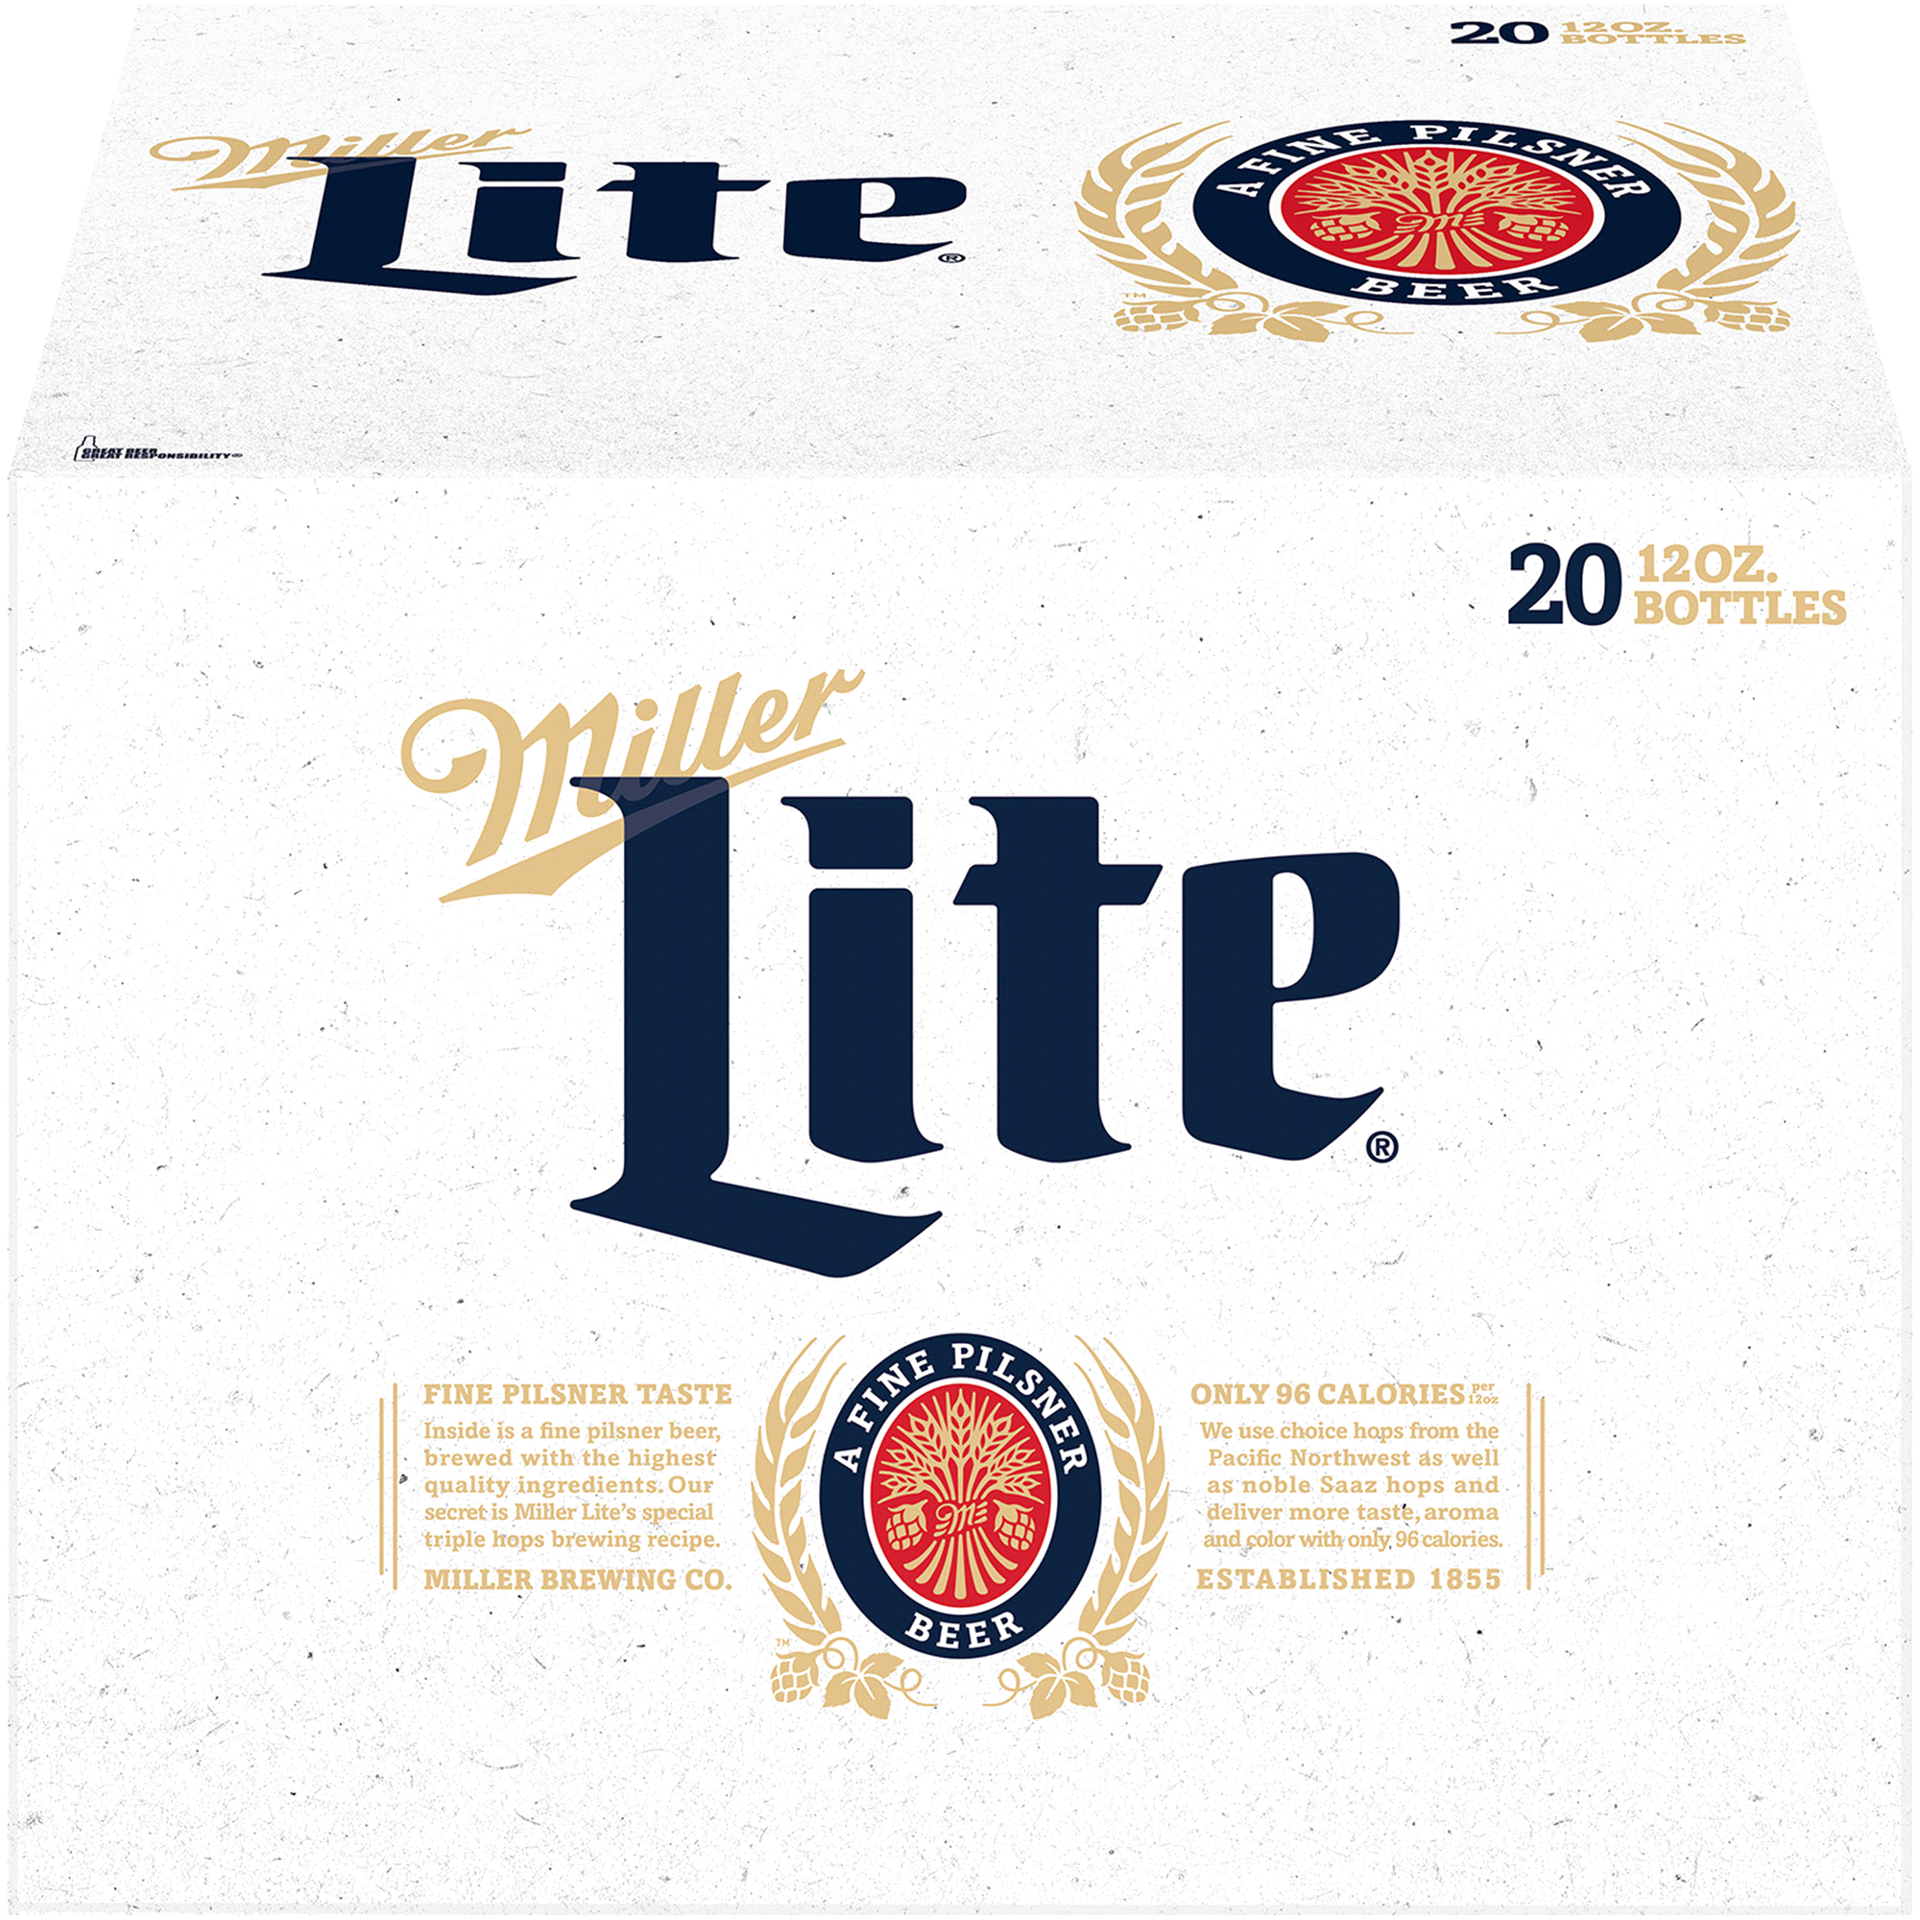 slide 11 of 29, Miller Beer, 240 oz